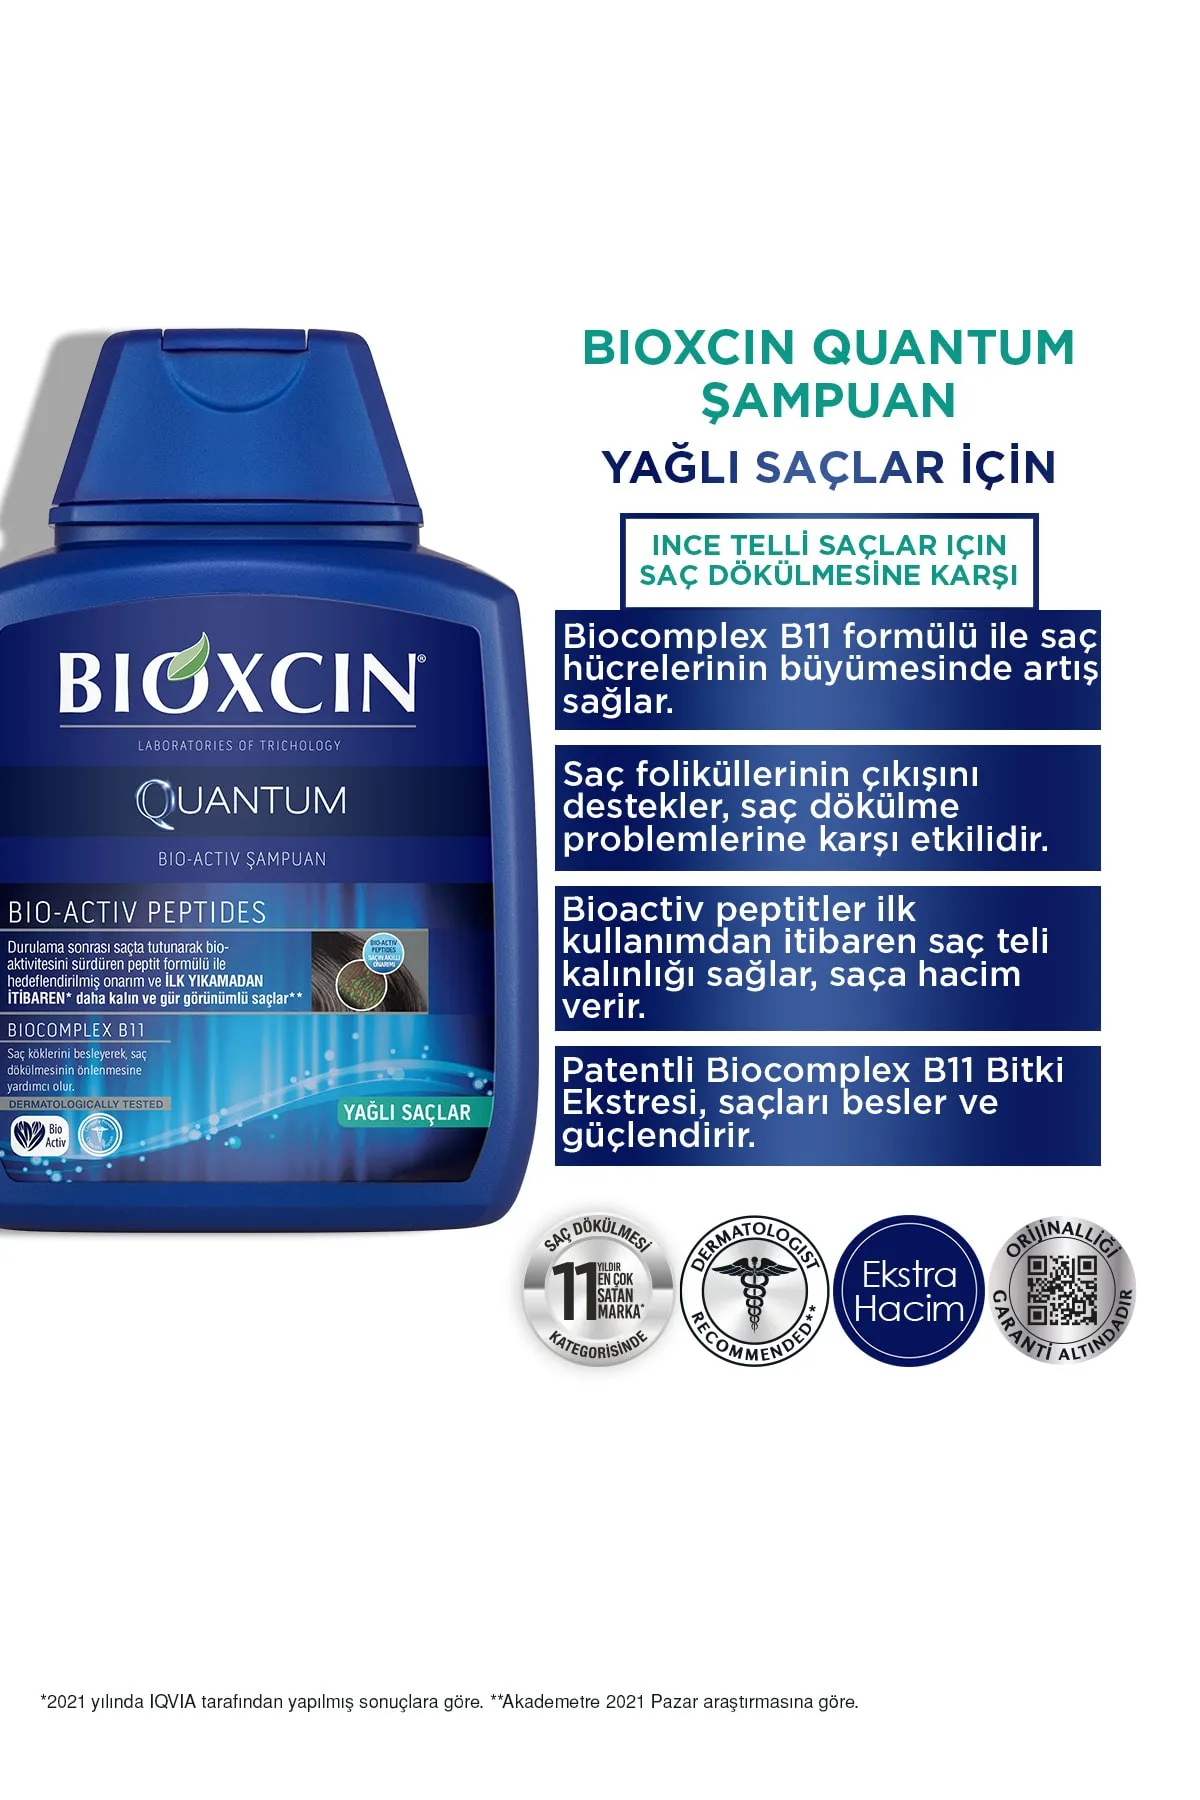 Bioxcin Quantum Yağlı Saçlar İçin Şampuan 300 ml - 2